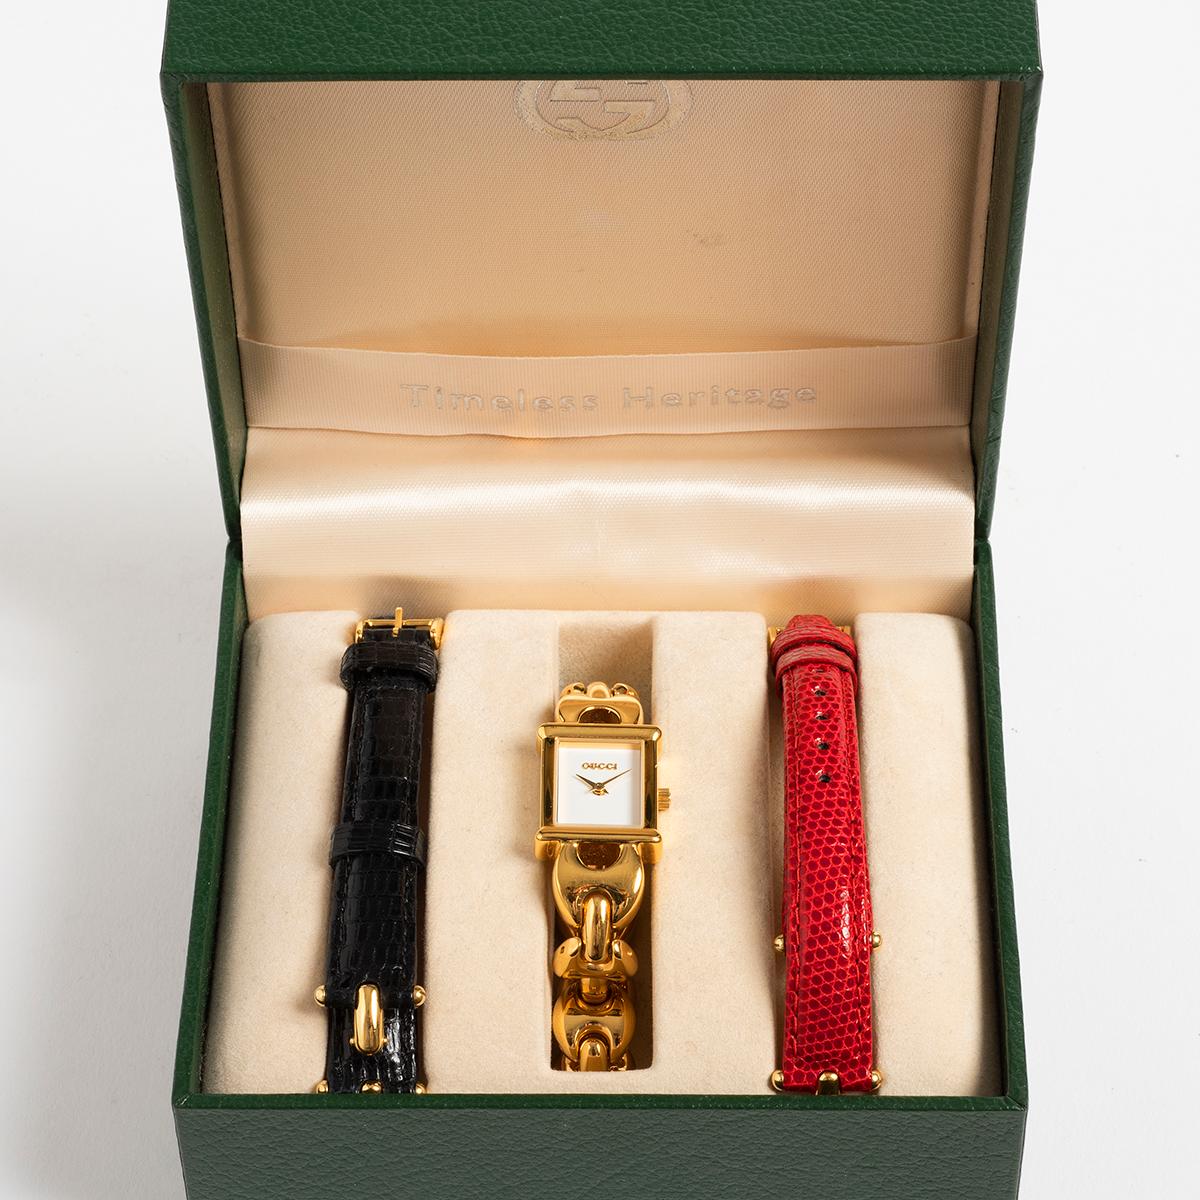 Notre montre Gucci 1800L pour femme présente un bracelet plaqué or et un boîtier de 16 mm avec un cadran blanc. Le bracelet peut être échangé à l'aide d'un ingénieux système de rotation et de poussée/traction pour les bracelets en cuir rouge ou en